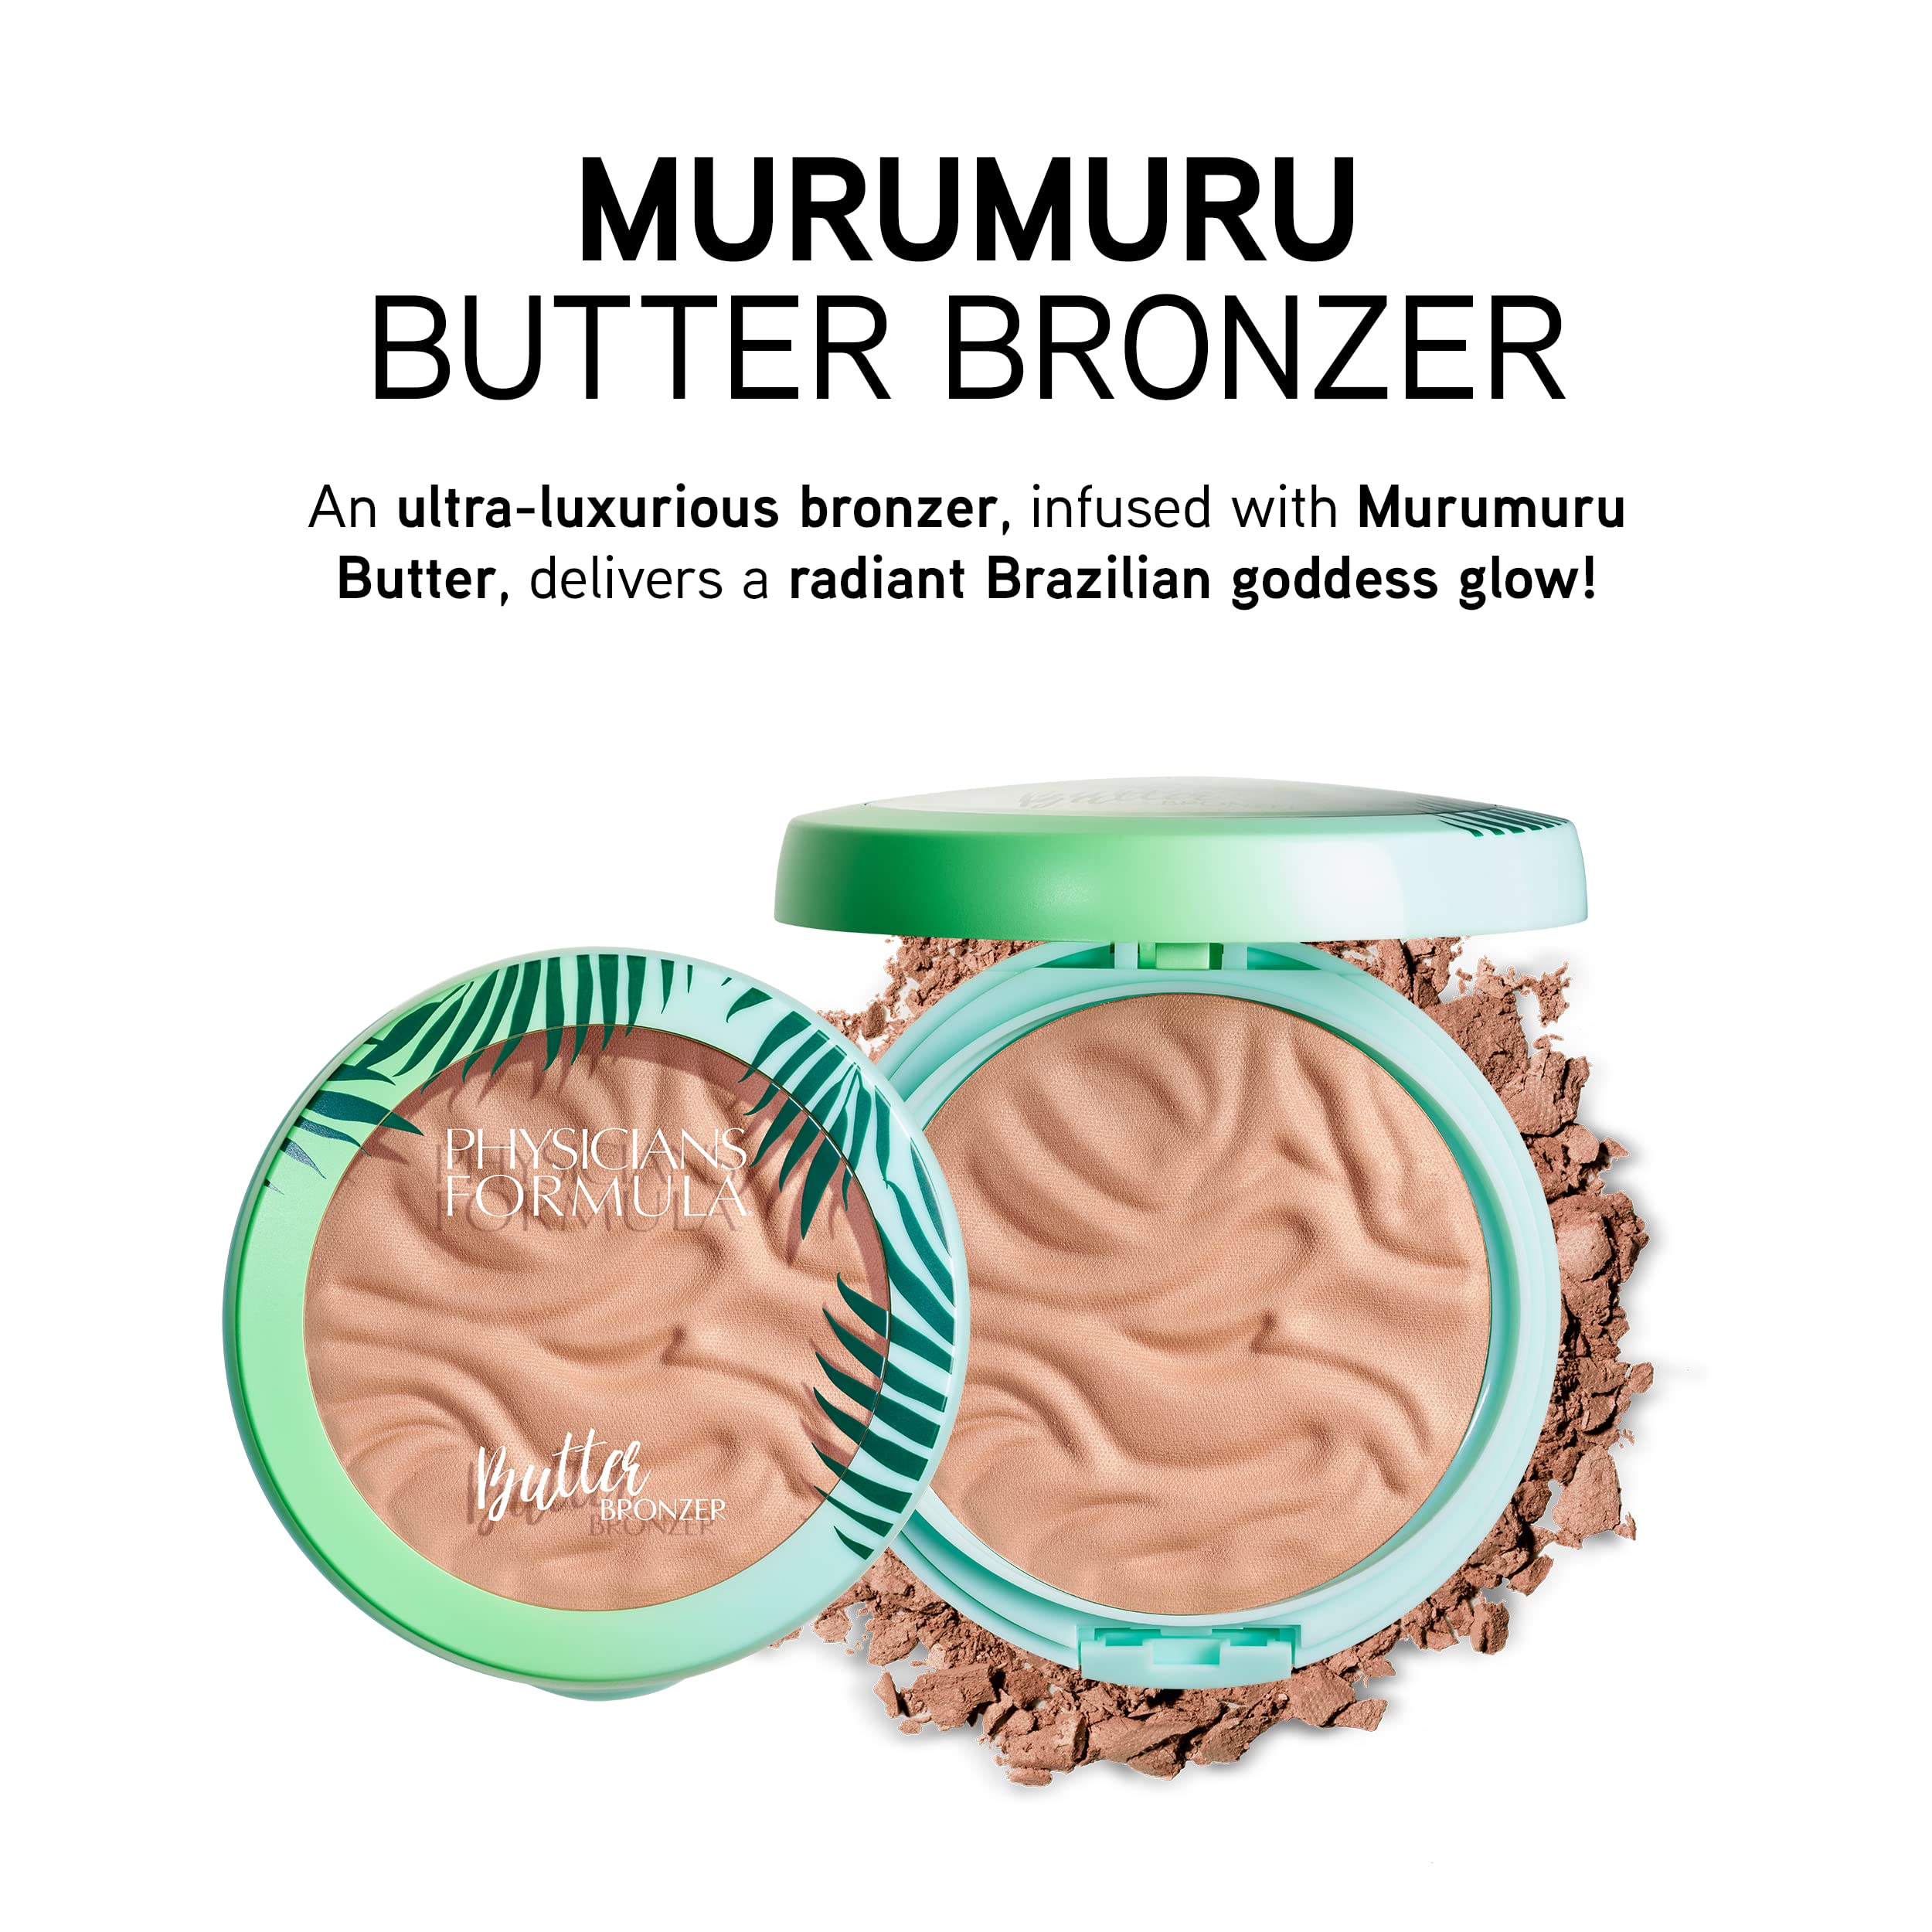 Physicians Formula Murumuru Butter Bronzer | Endless Summer | Bronzer Face Powder Makeup | Dermatologist Approved